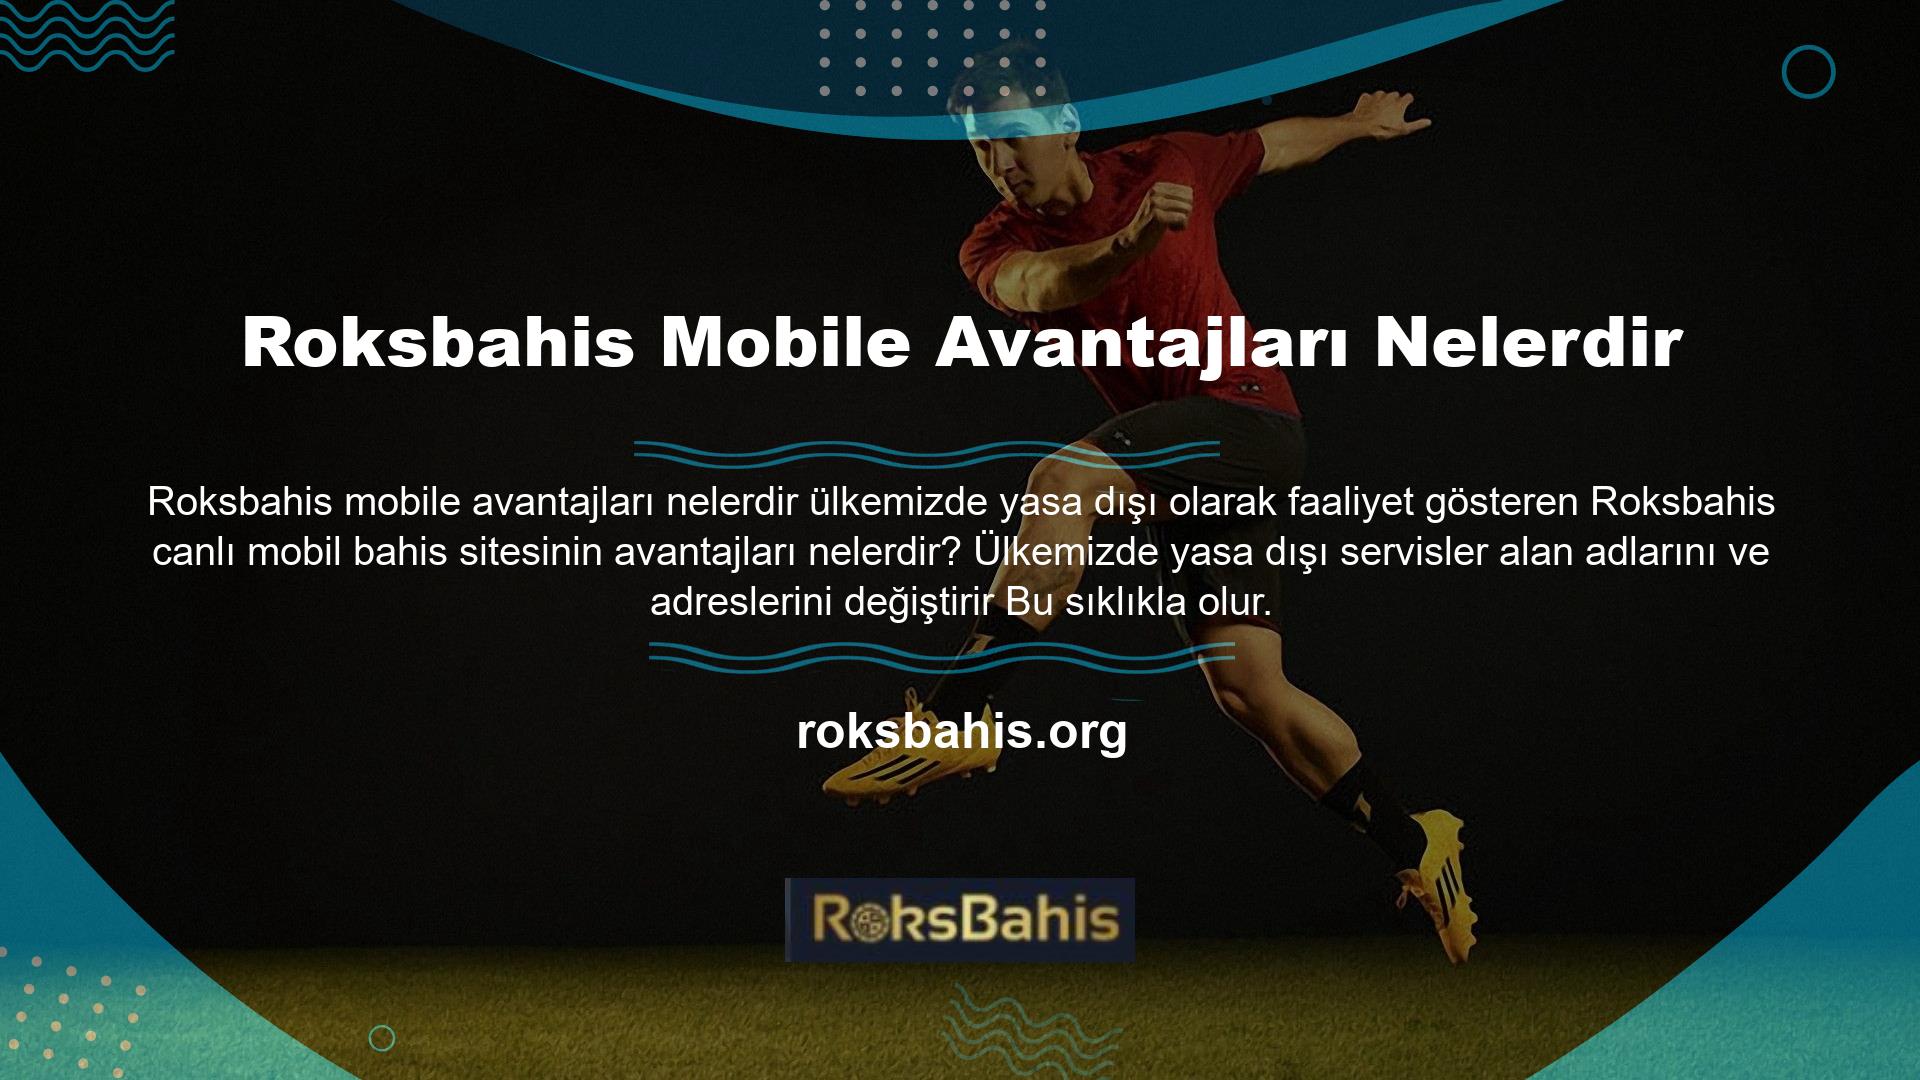 Bu durumda Roksbahis, kullanıcı kayıplarının önüne geçmek ve kullanıcılarına daha iyi hizmet vermek isteyen canlı bahis sitesi kullanıcıları için bir mobil uygulama geliştirmiştir